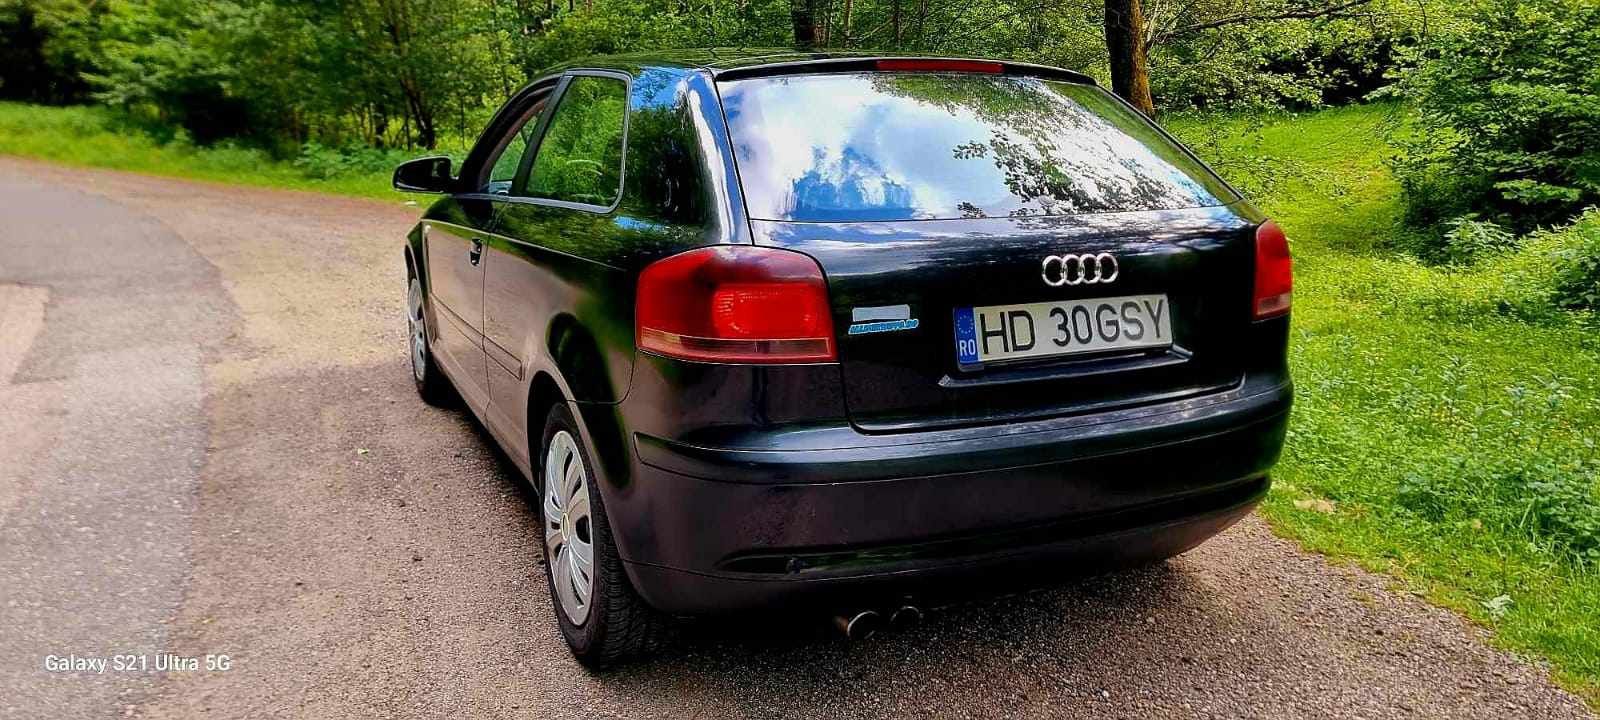 Vând Audi a3 an 2006